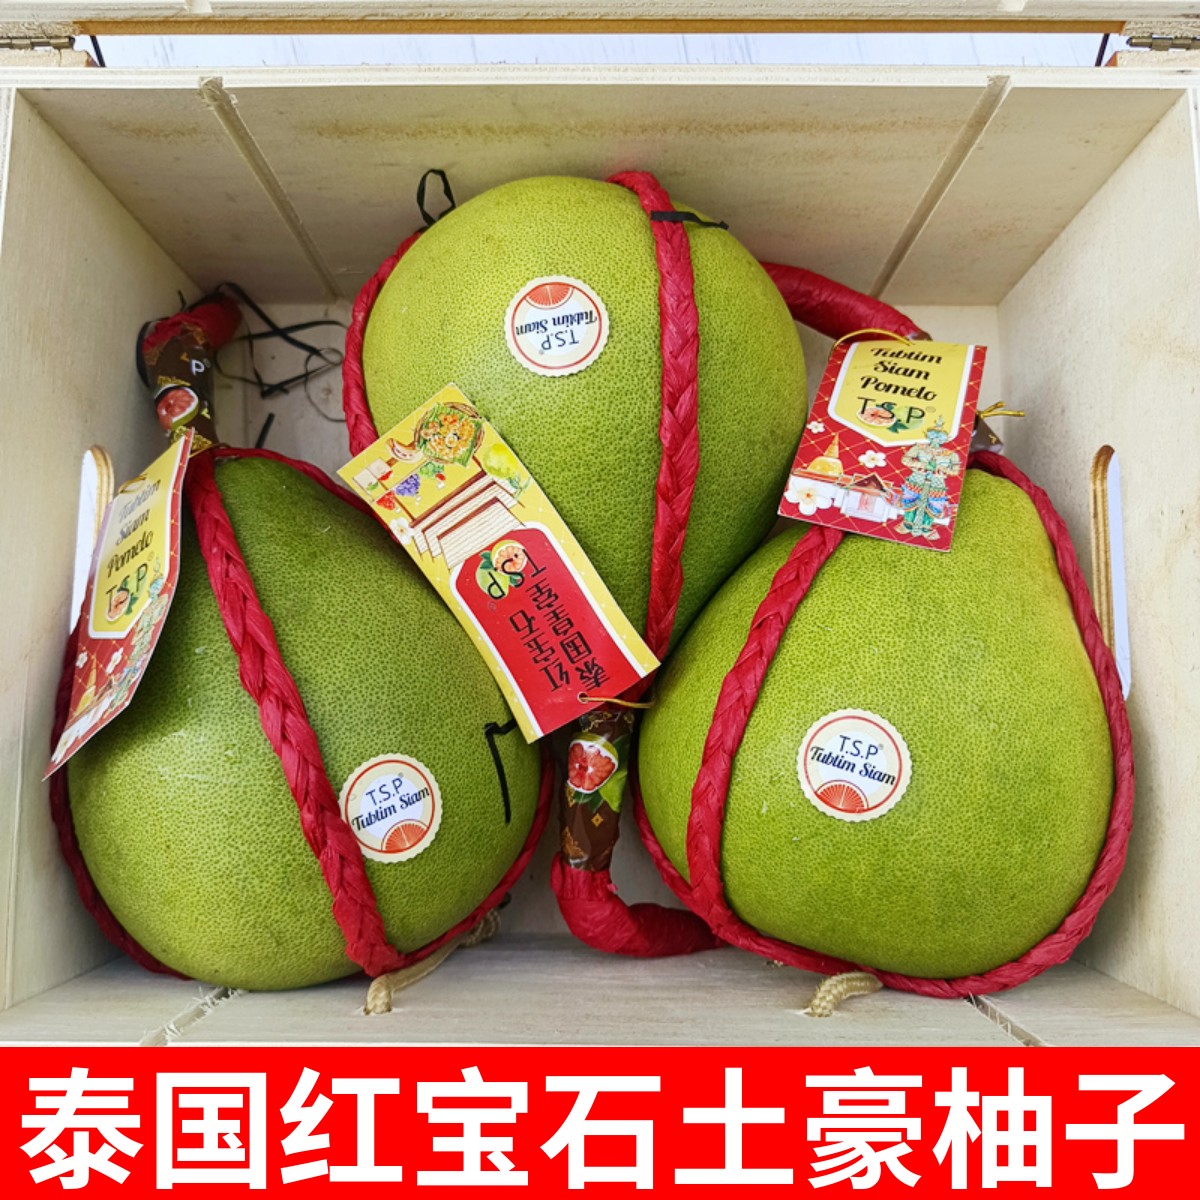 泰国柚子产量可观 主要外销中国&香港 - 农牧世界